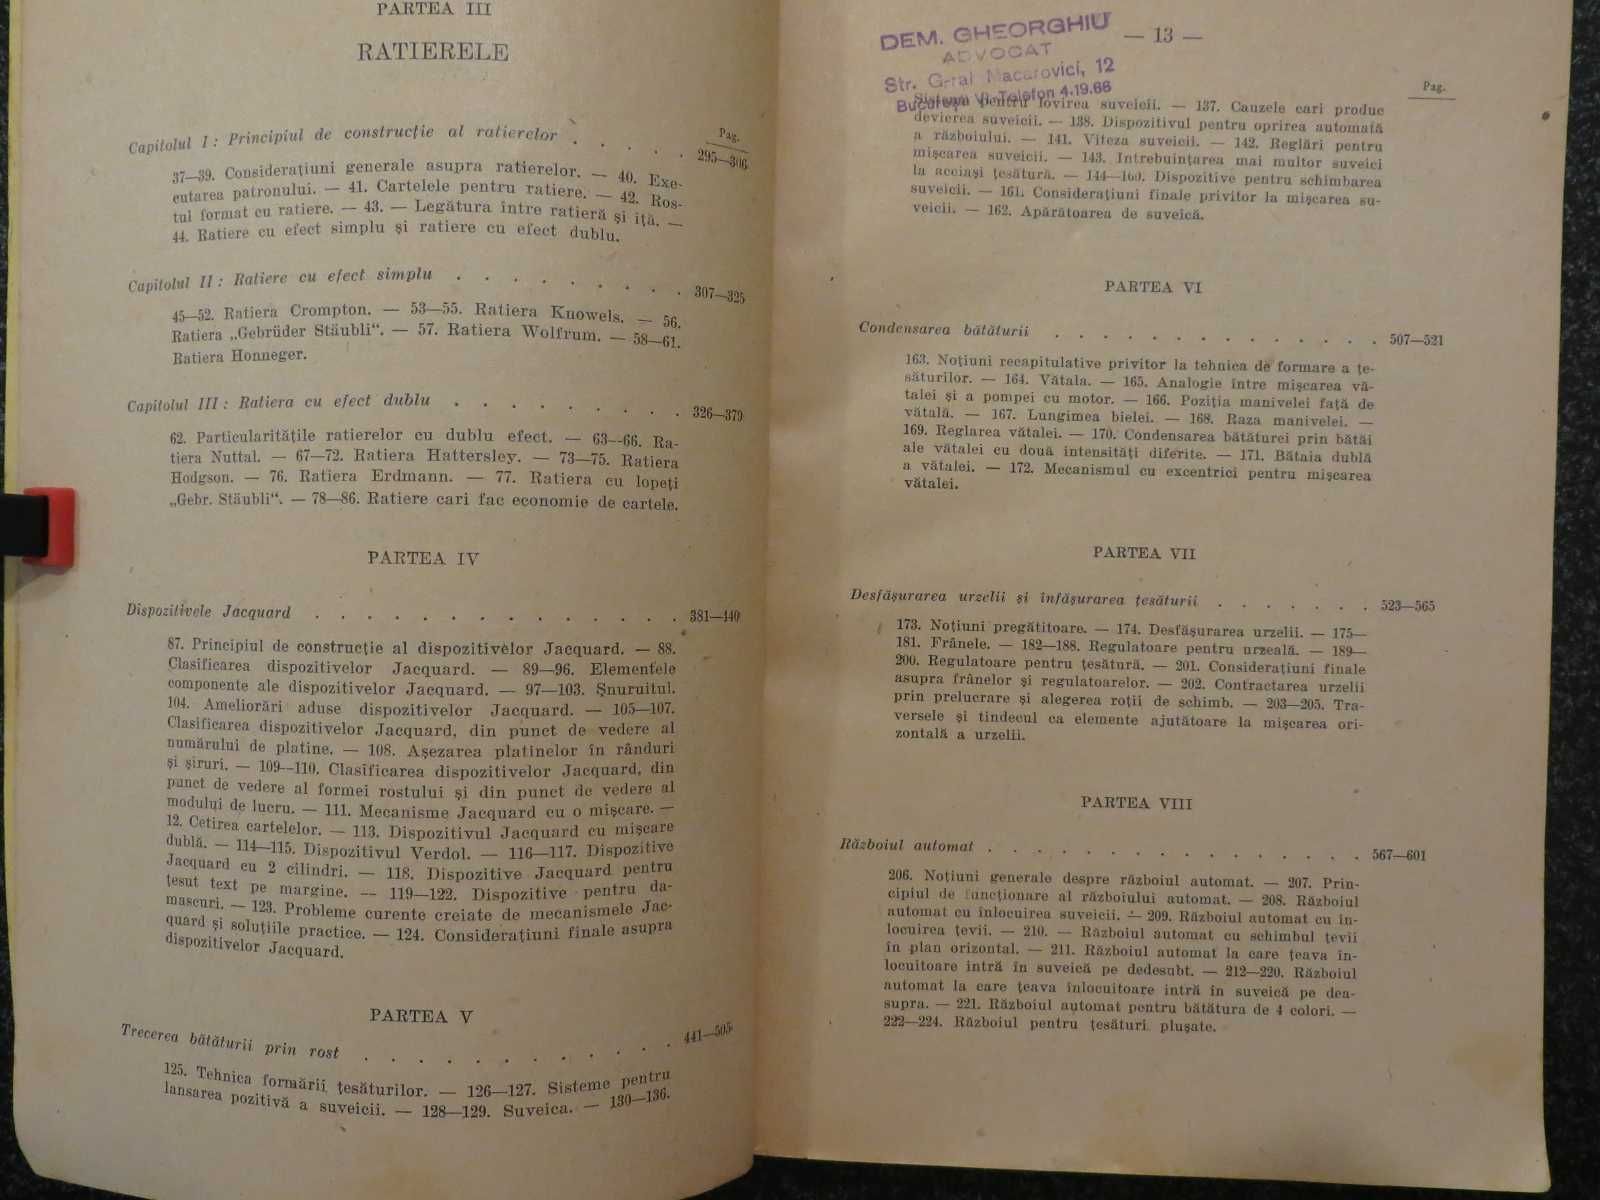 Tratat de tesatorie  Iosif Ionescu-Muscel  1948  dedicatie + autograf